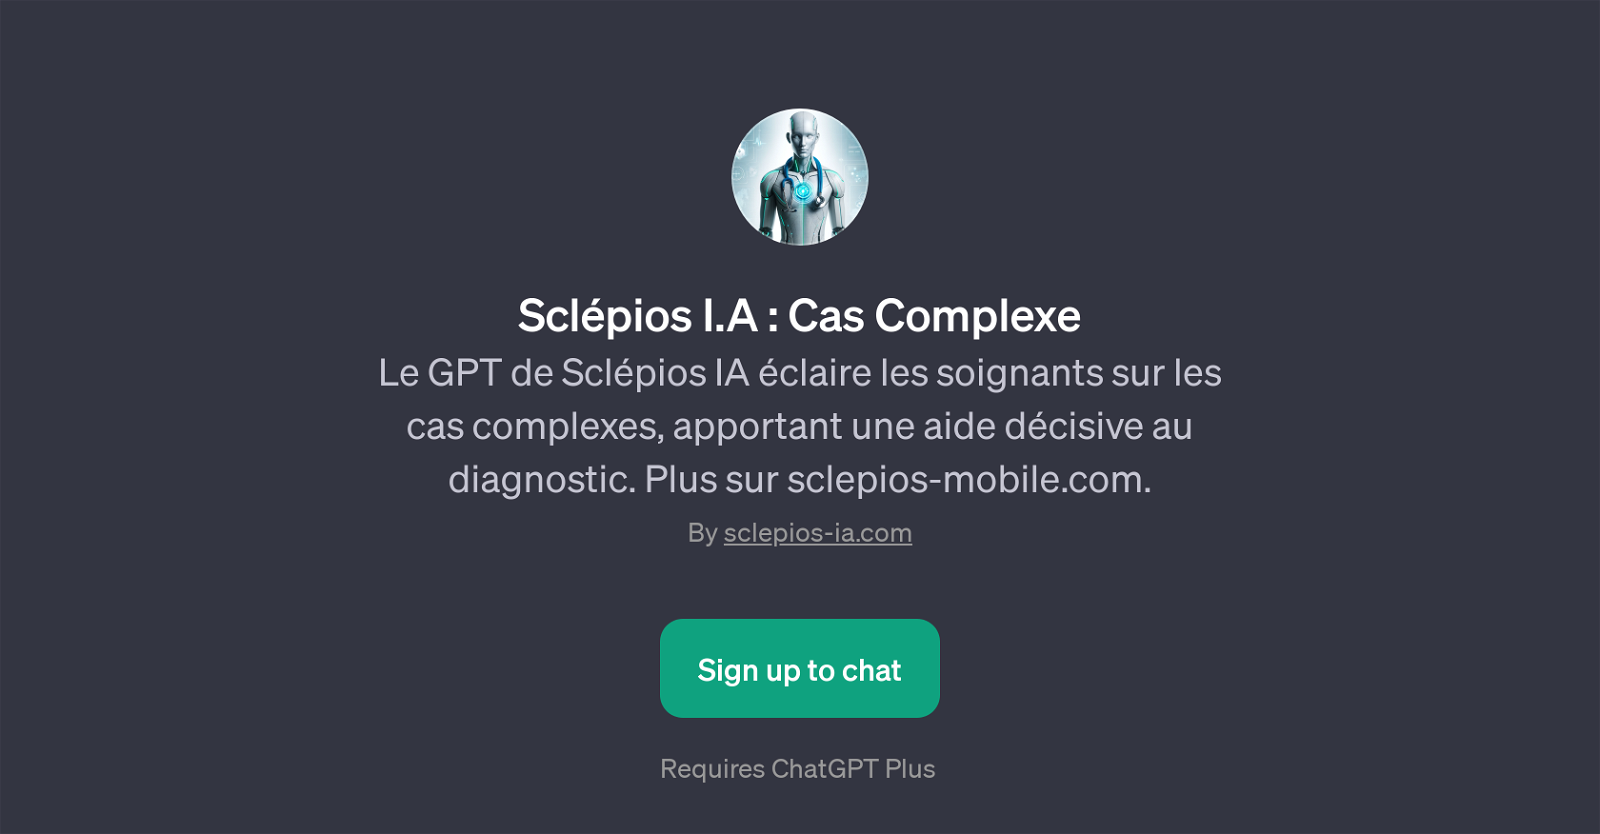 Sclpios I.A : Cas Complexe website